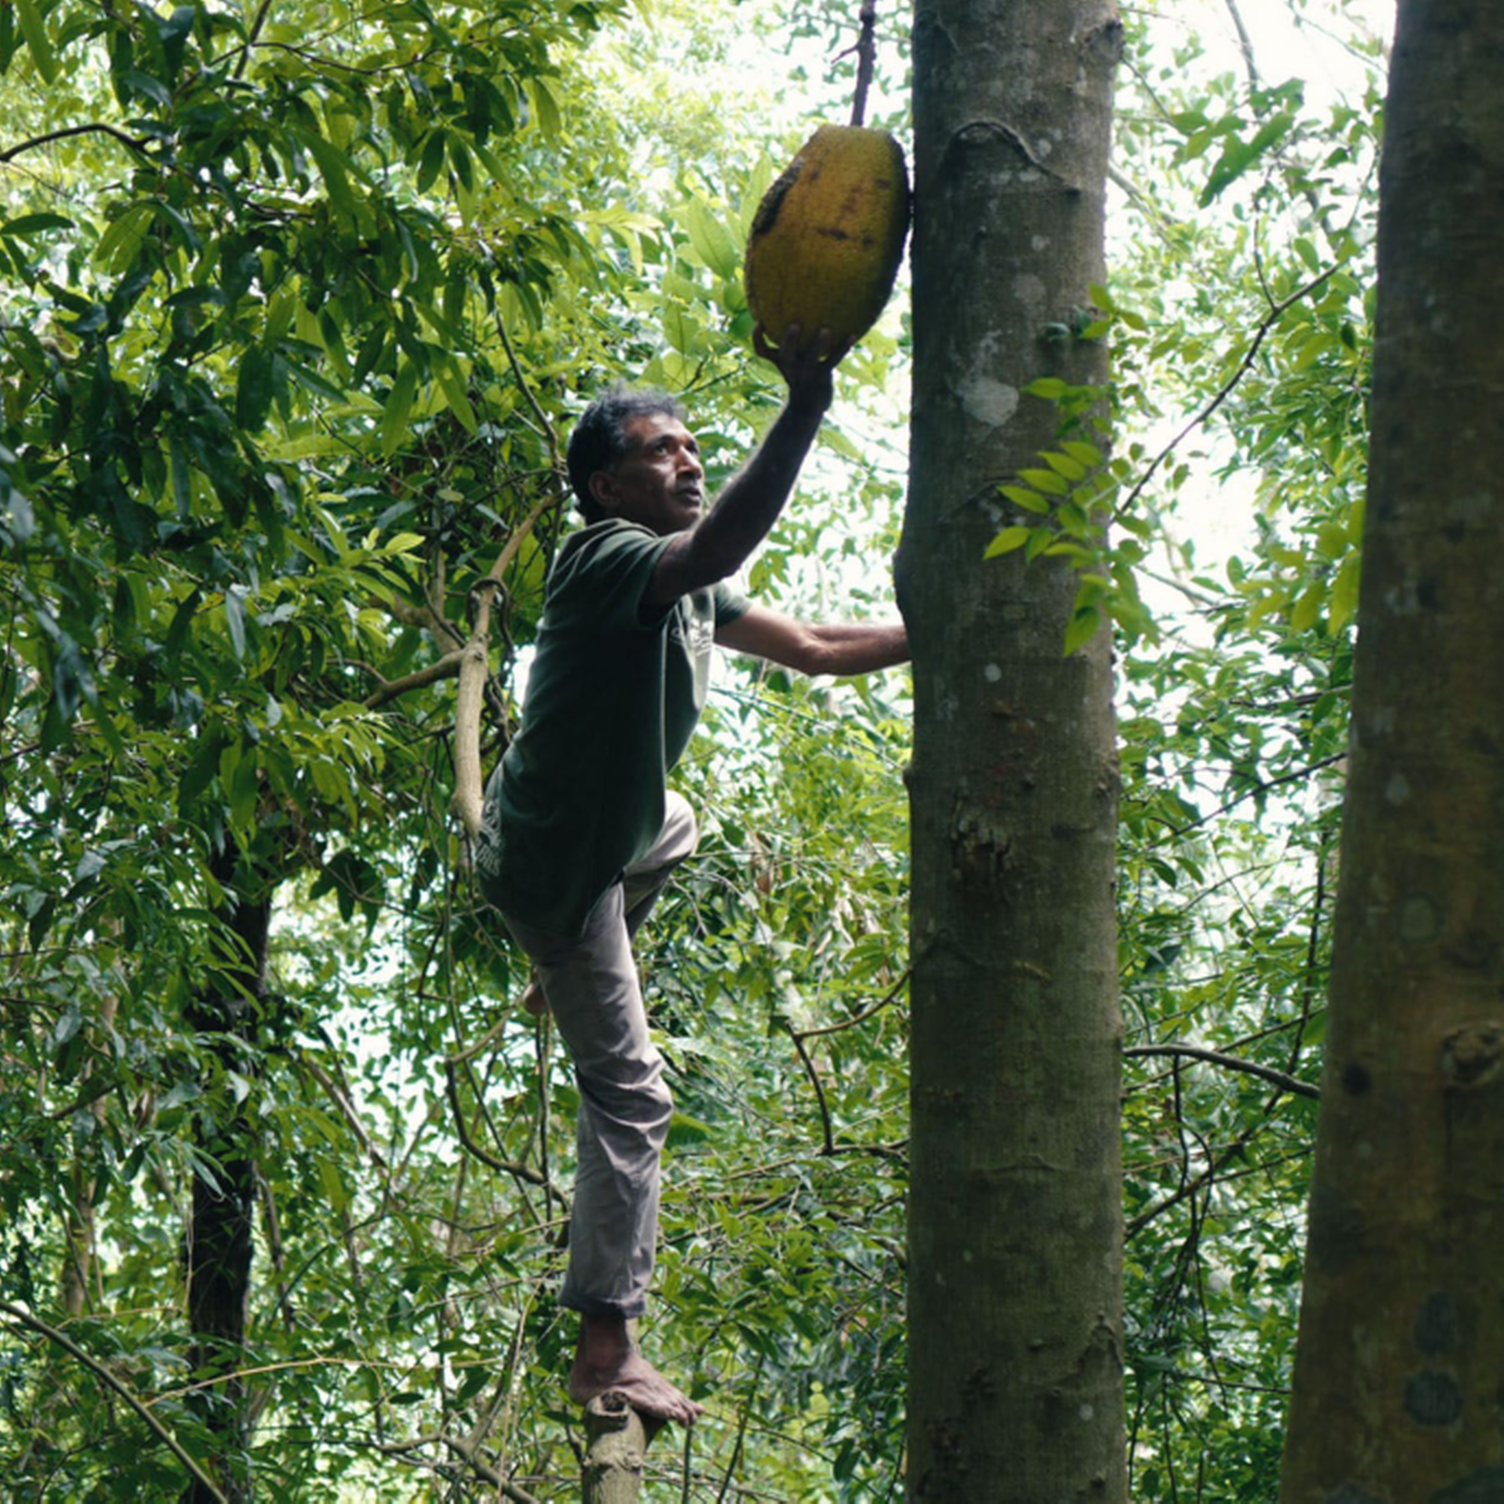 Un homme décrochant un fruit du jaquier dans une forêt au Sri Lanka